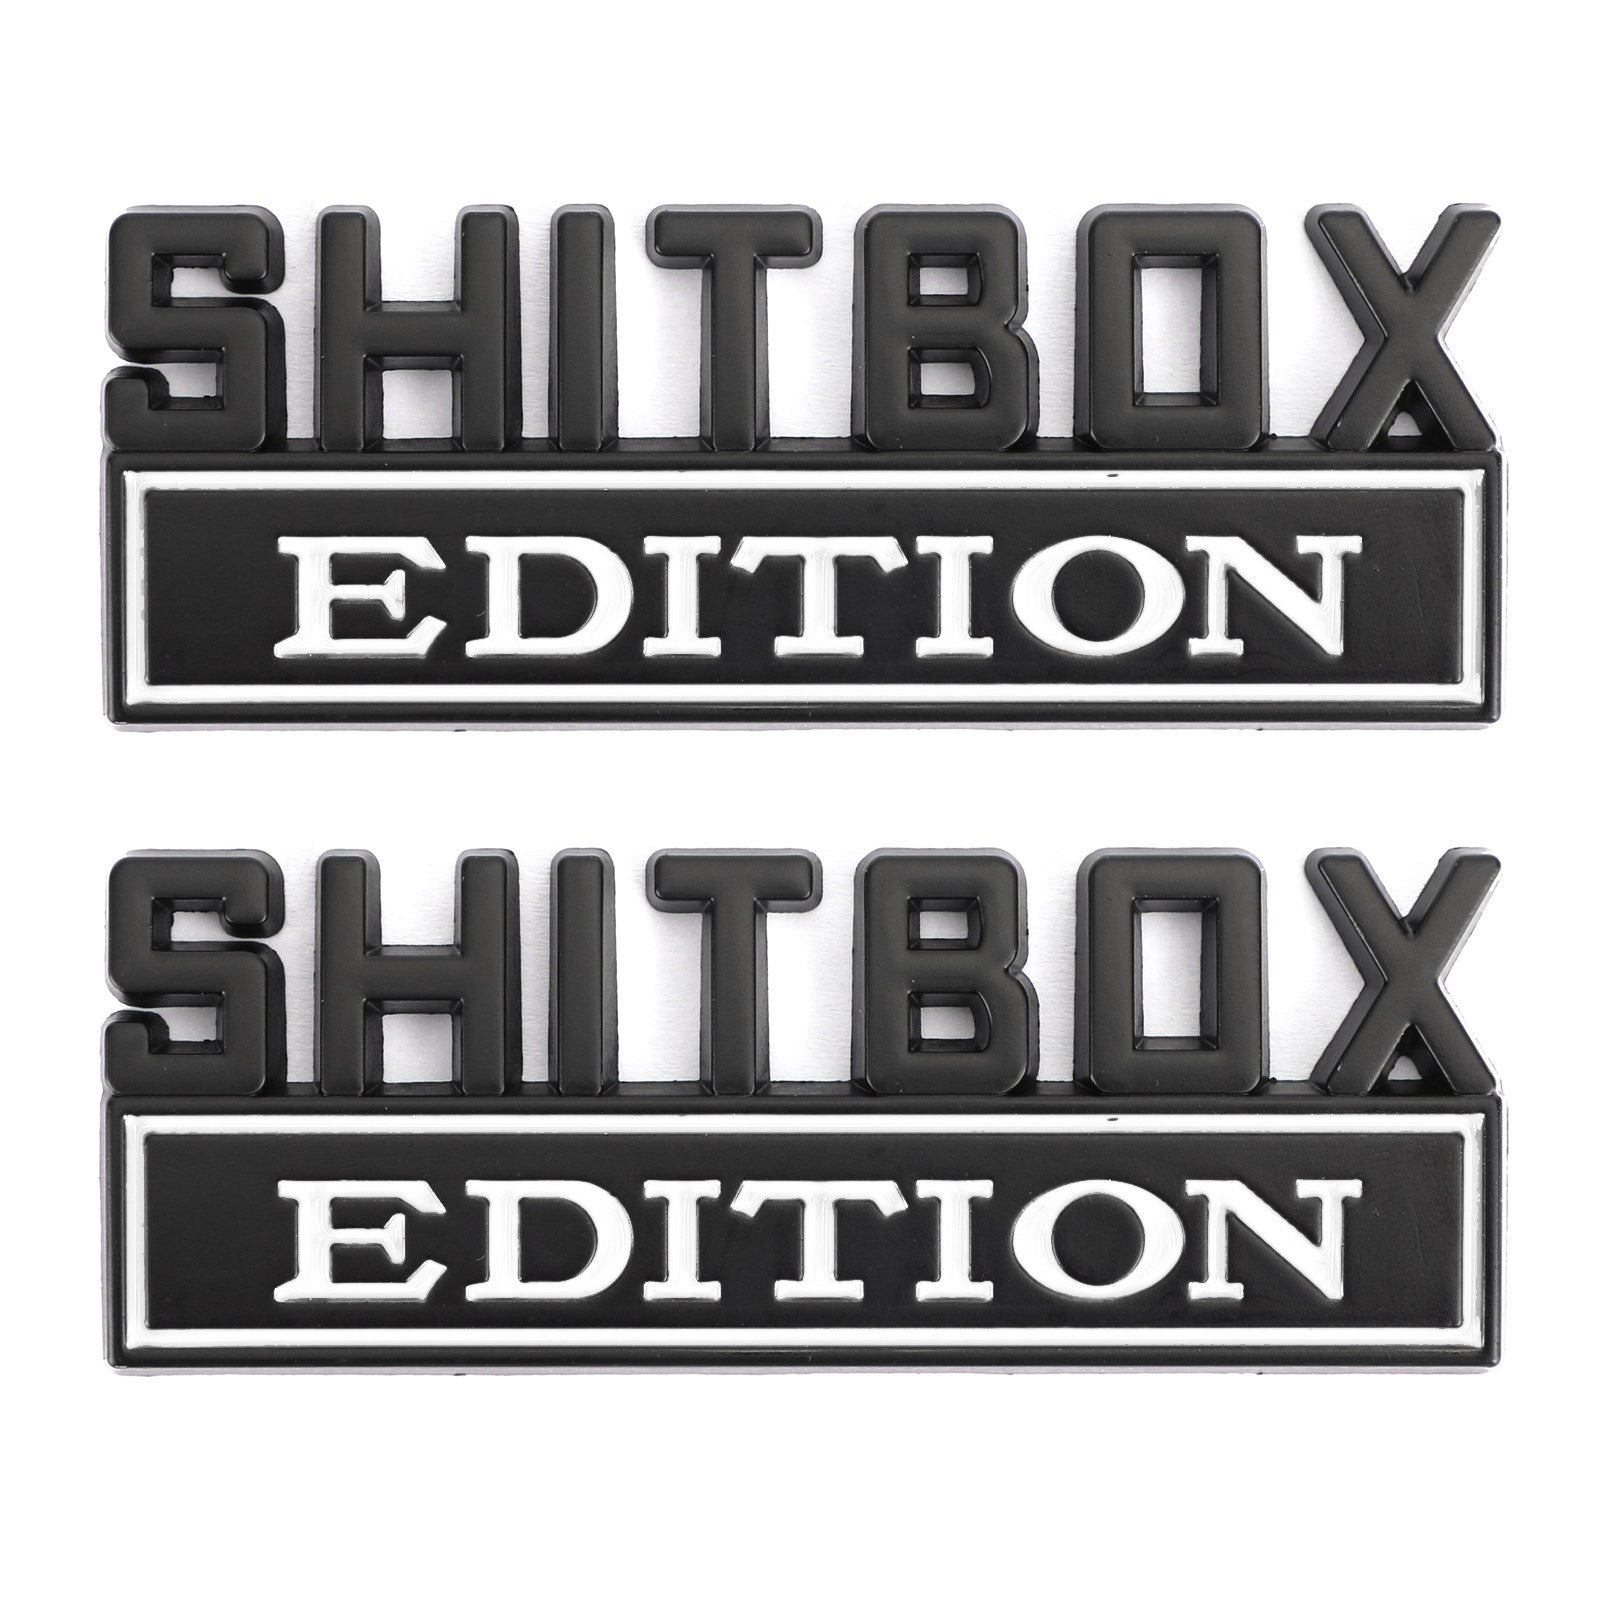 2pc Shitbox Edition Emblème Autocollant Badges Autocollants Pour Ford Chevr Voiture Camion #C Générique